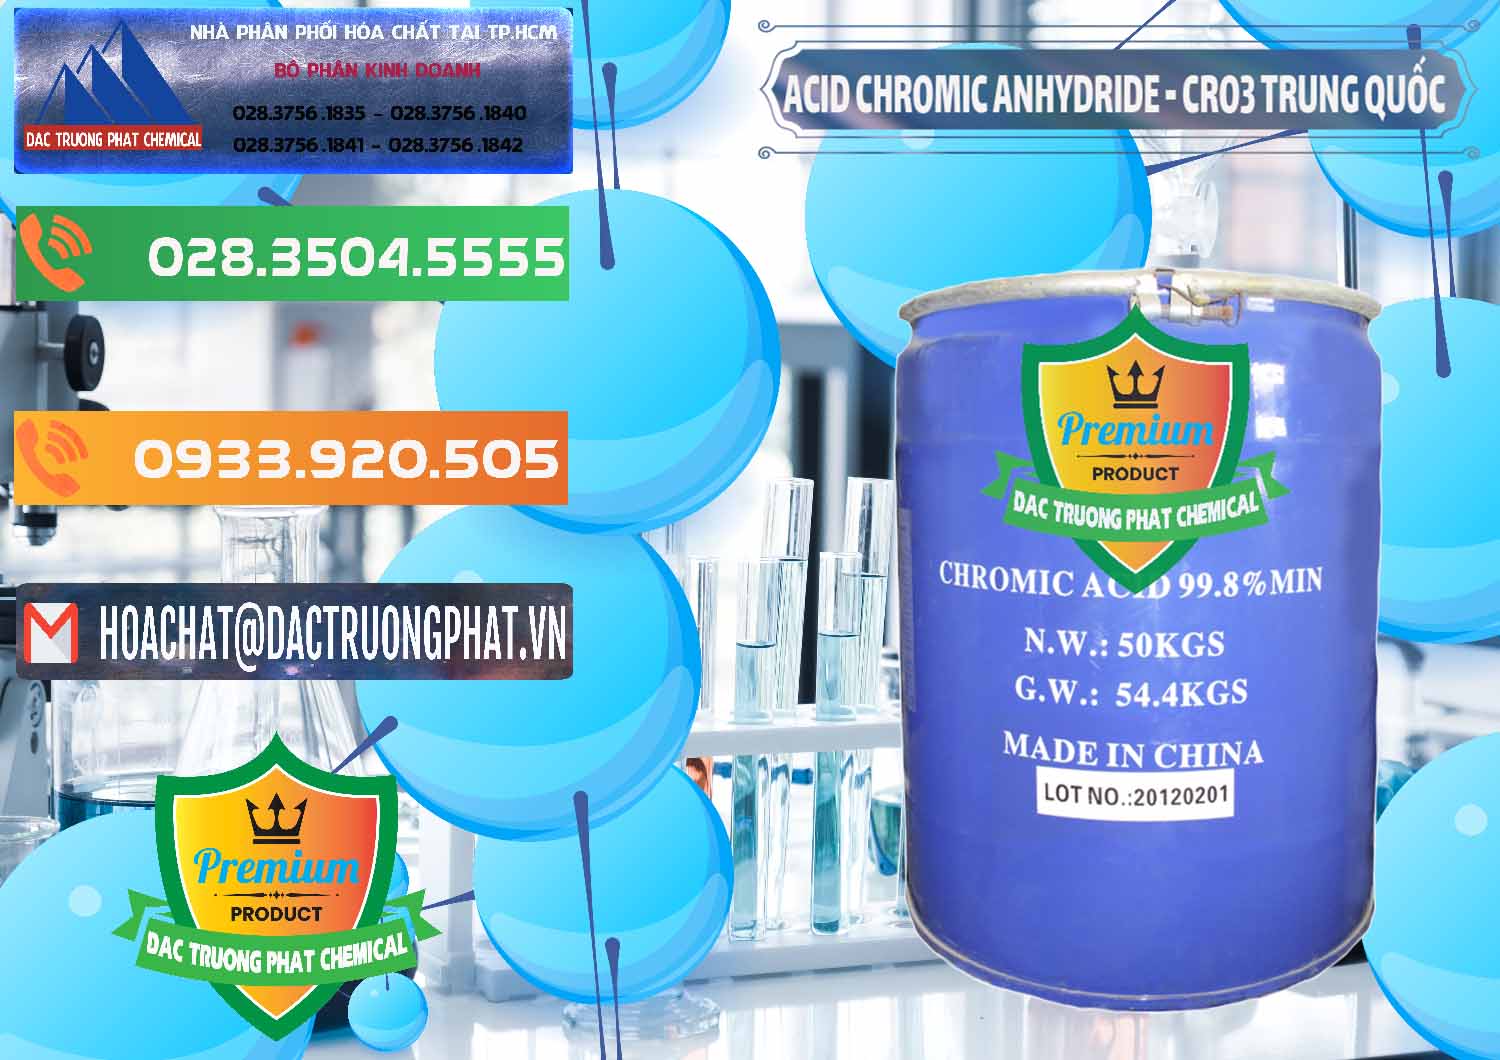 Phân phối ( bán ) Acid Chromic Anhydride - Cromic CRO3 Trung Quốc China - 0007 - Cty kinh doanh - cung cấp hóa chất tại TP.HCM - hoachatxulynuoc.com.vn